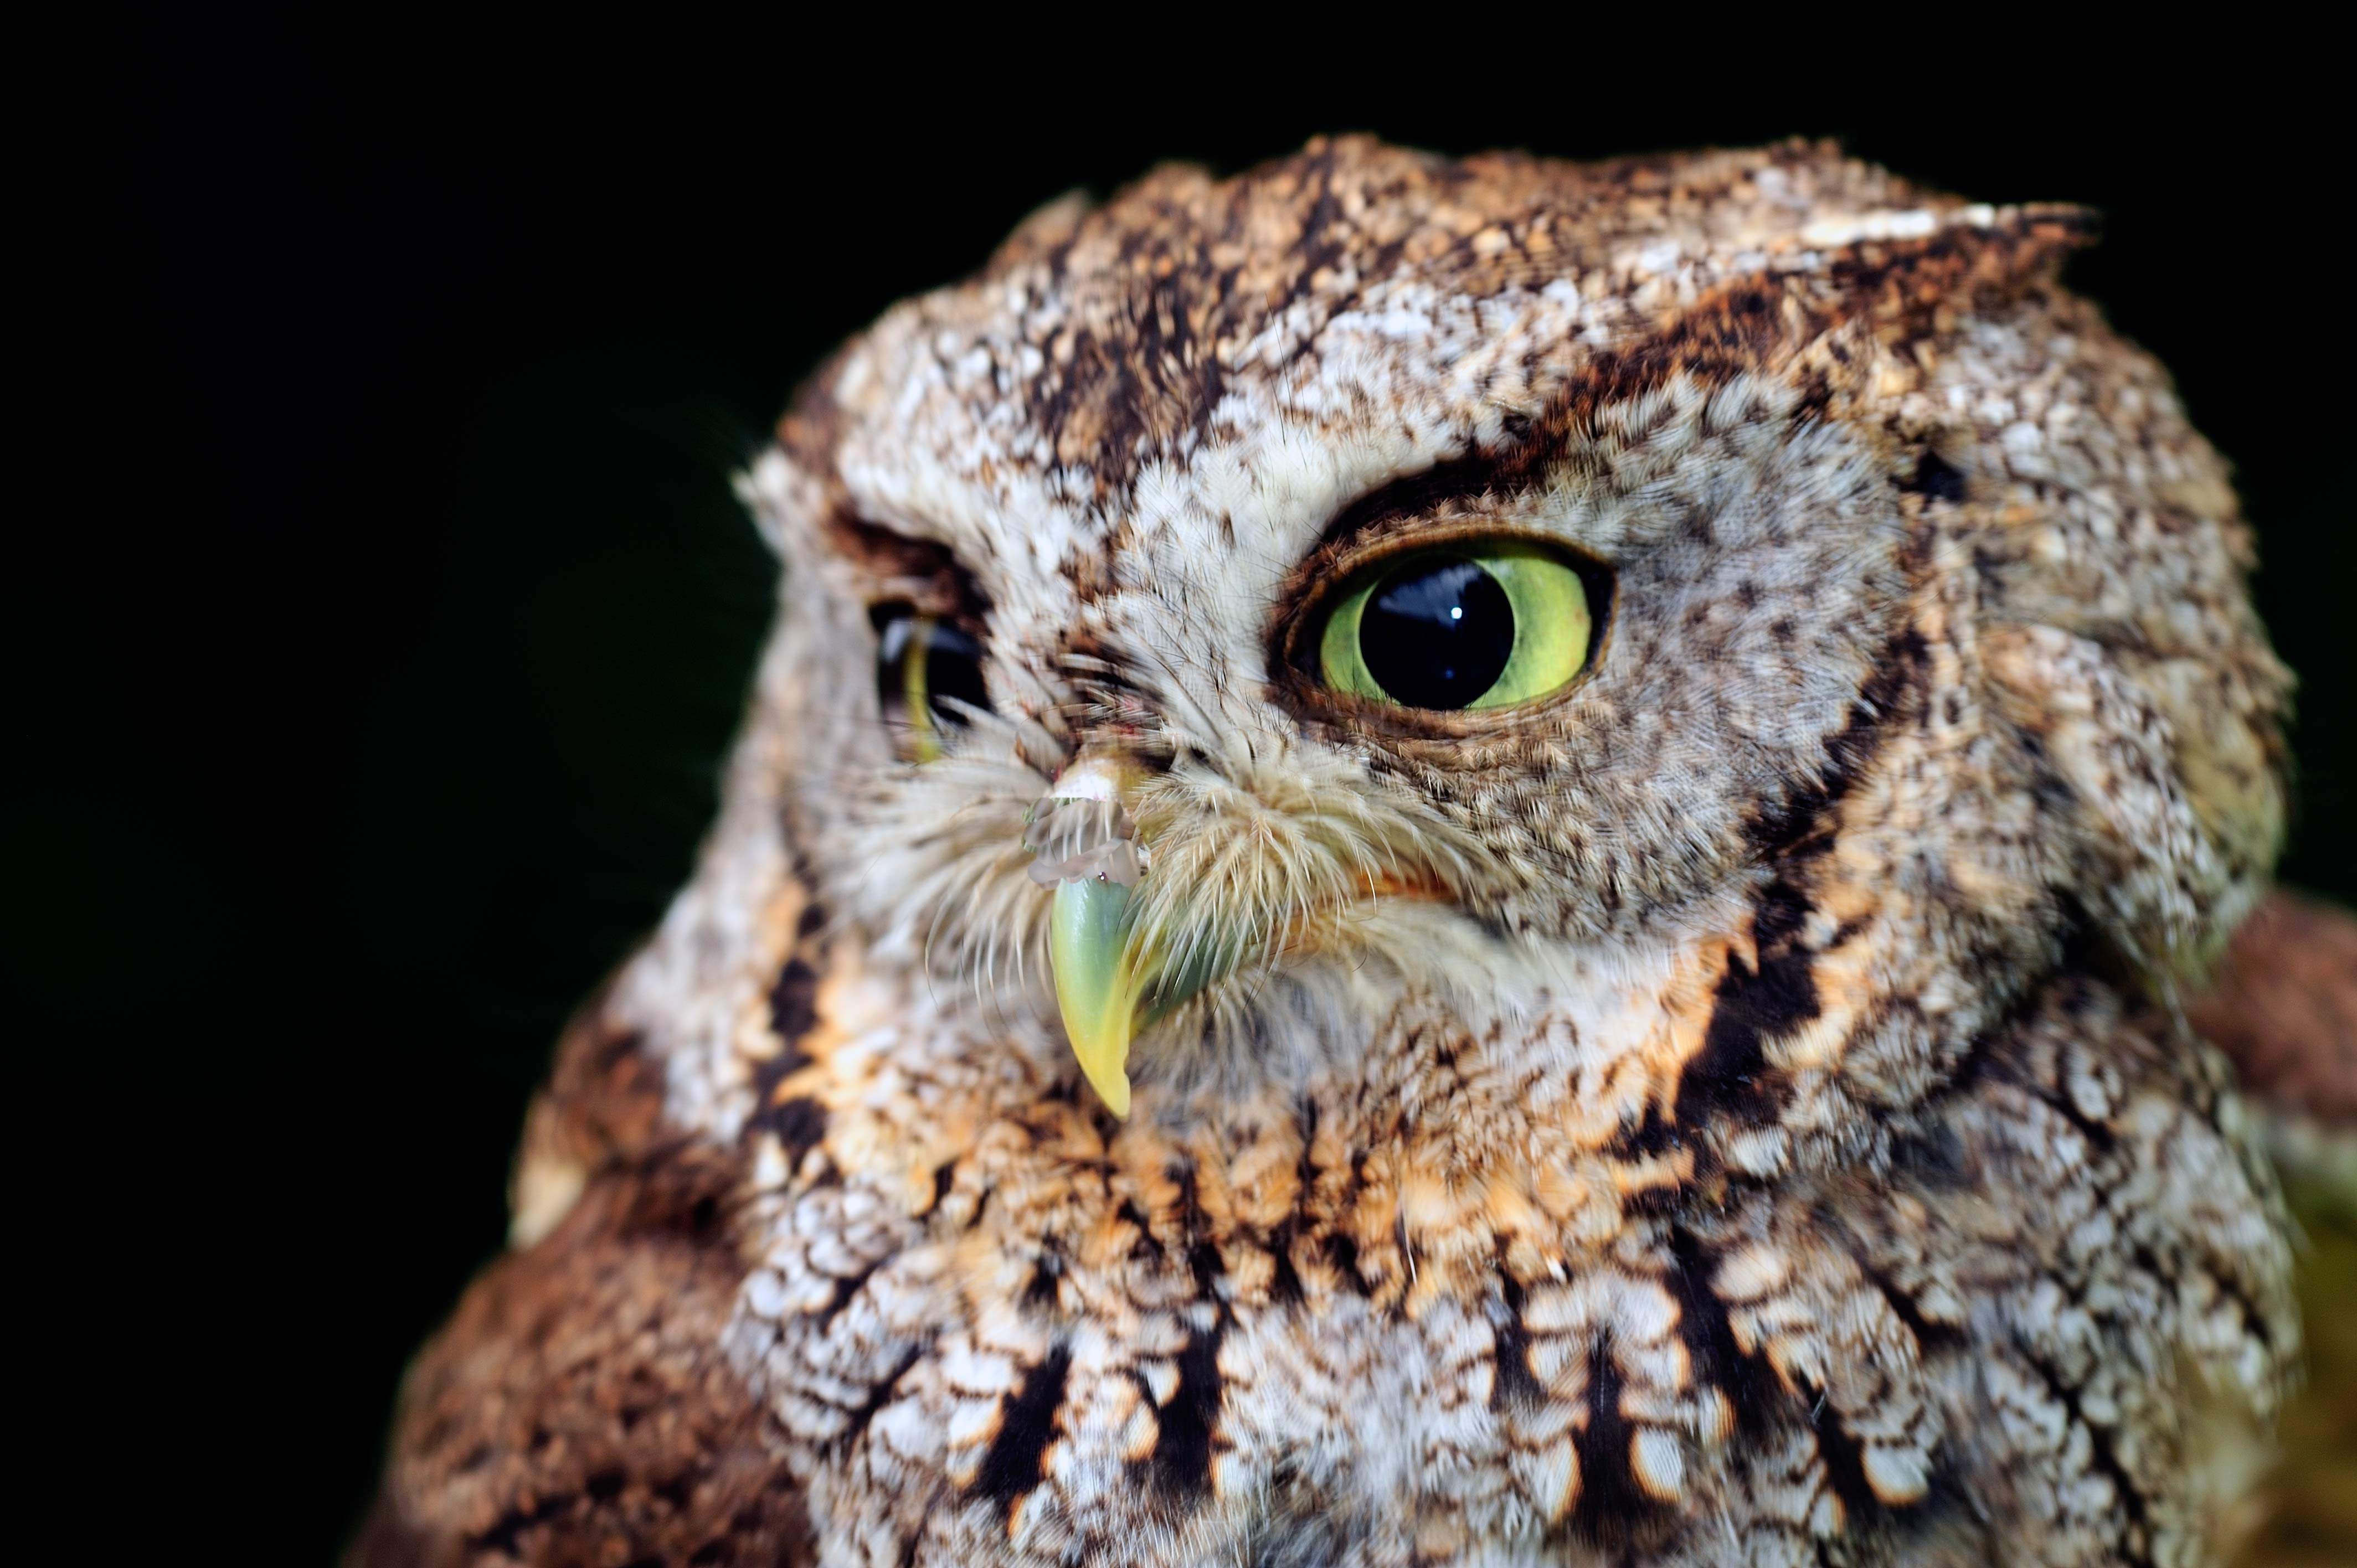 Eastern screech-owl